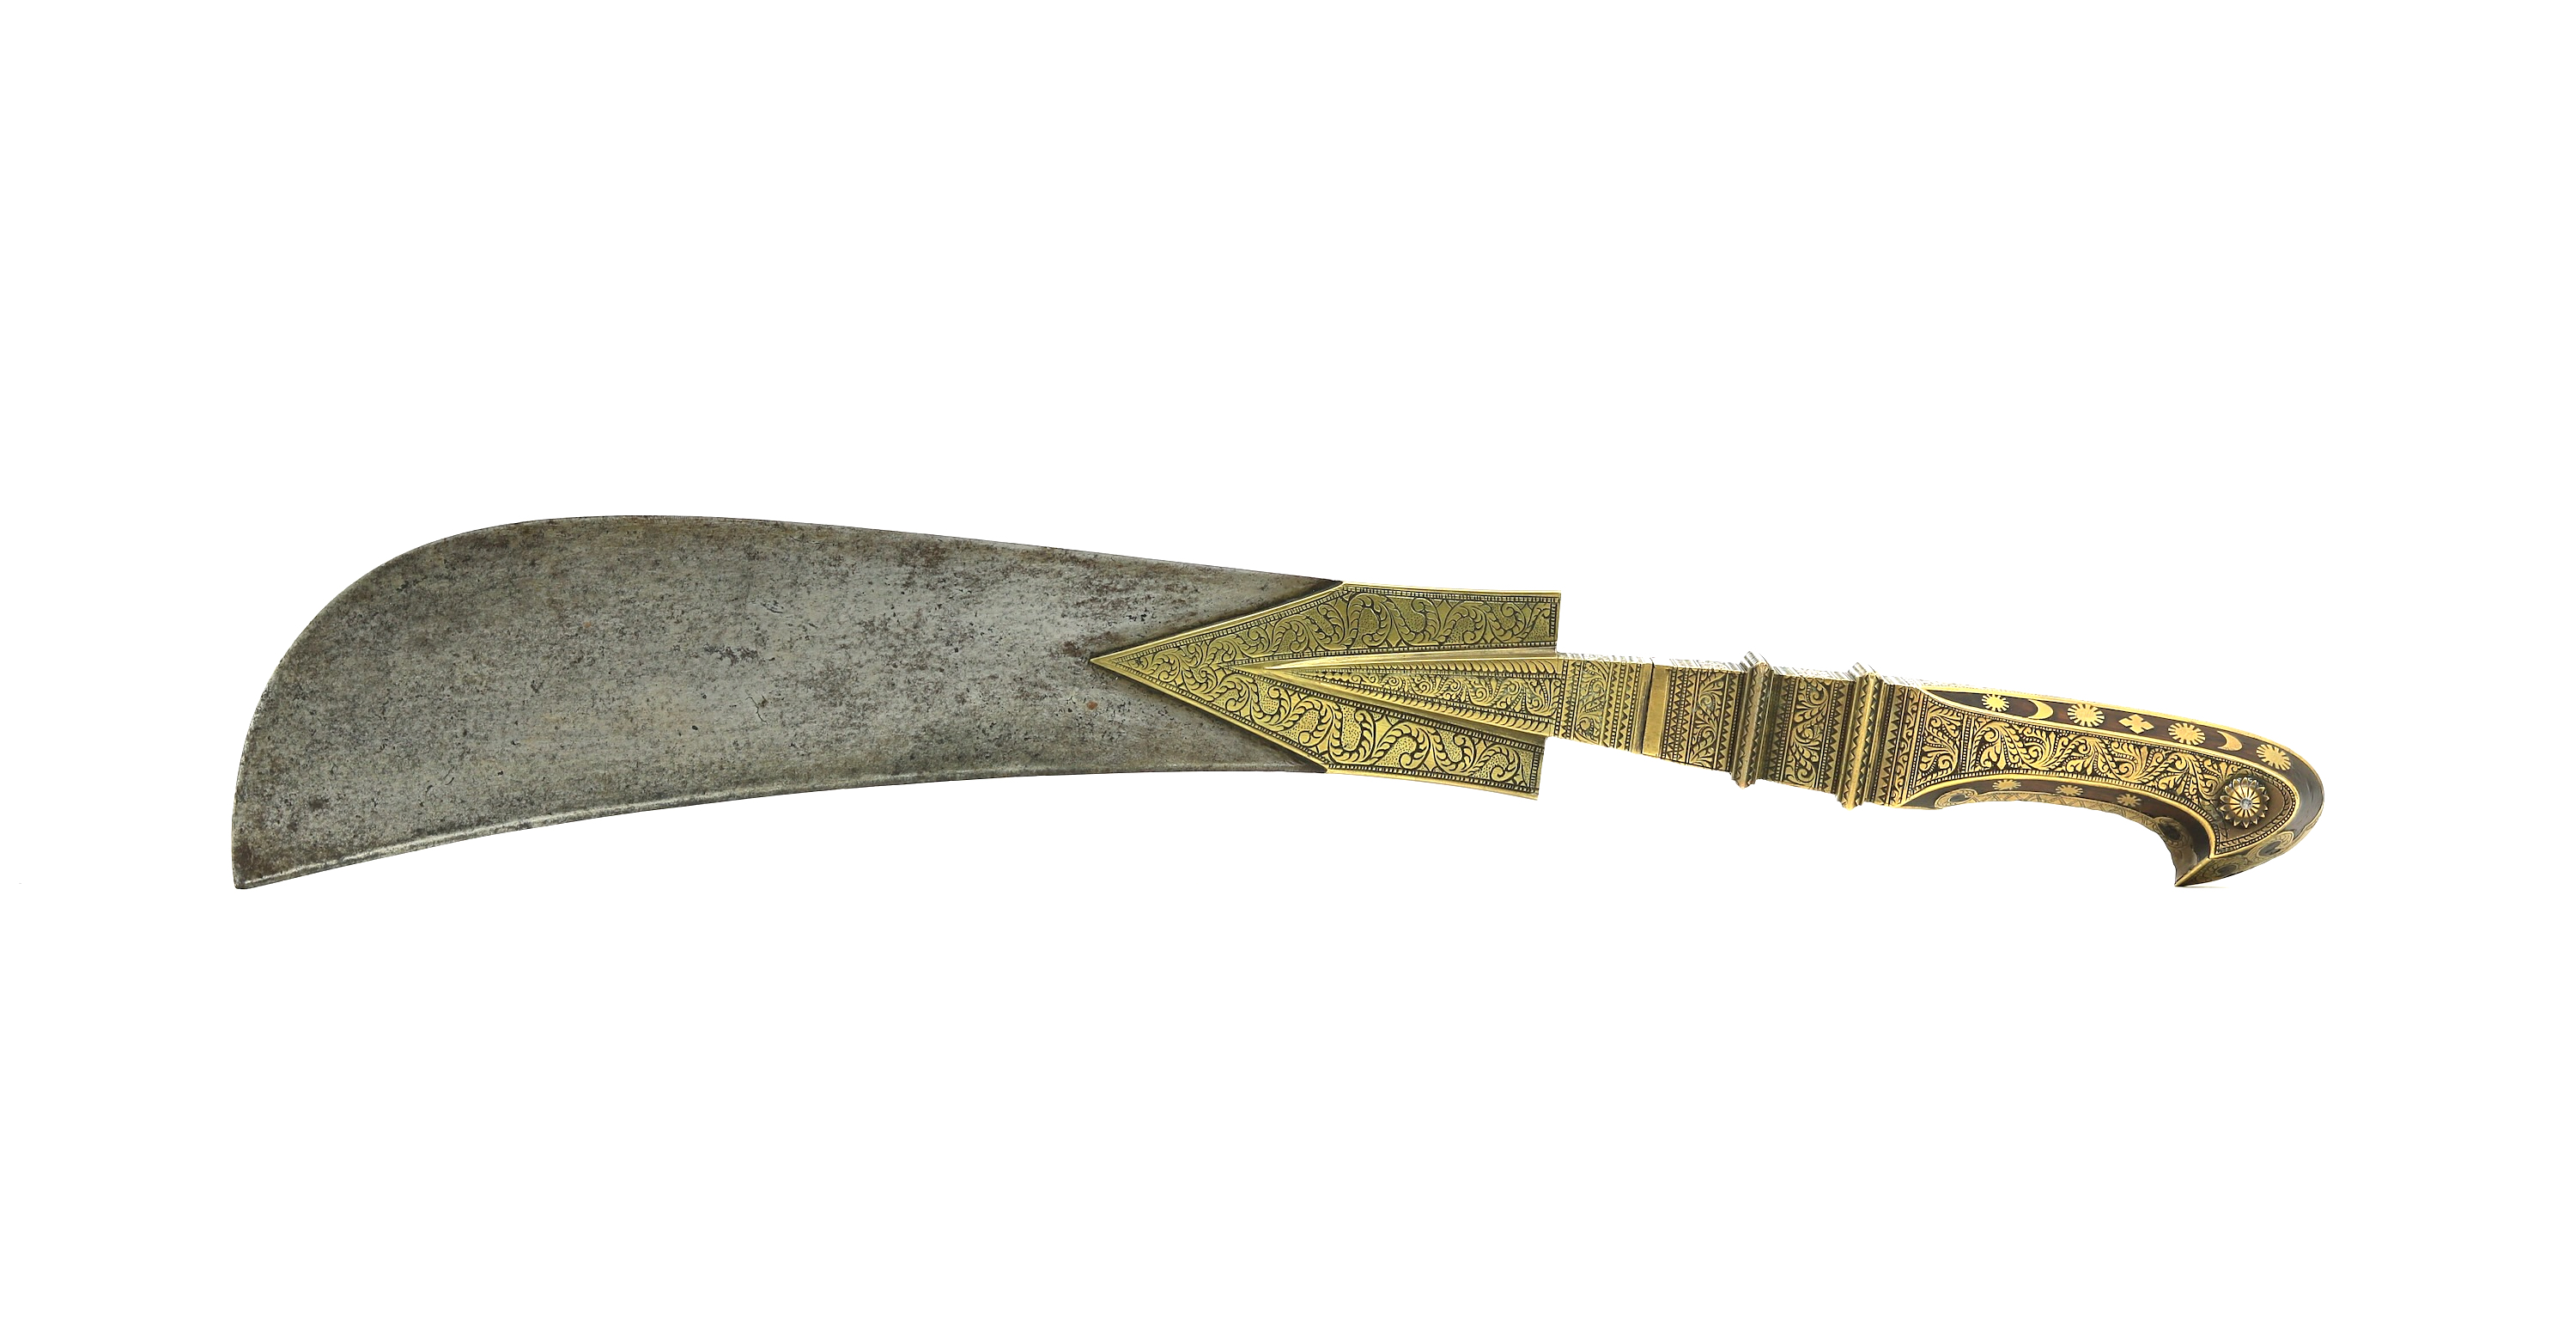 Malabar coast Moplah sword